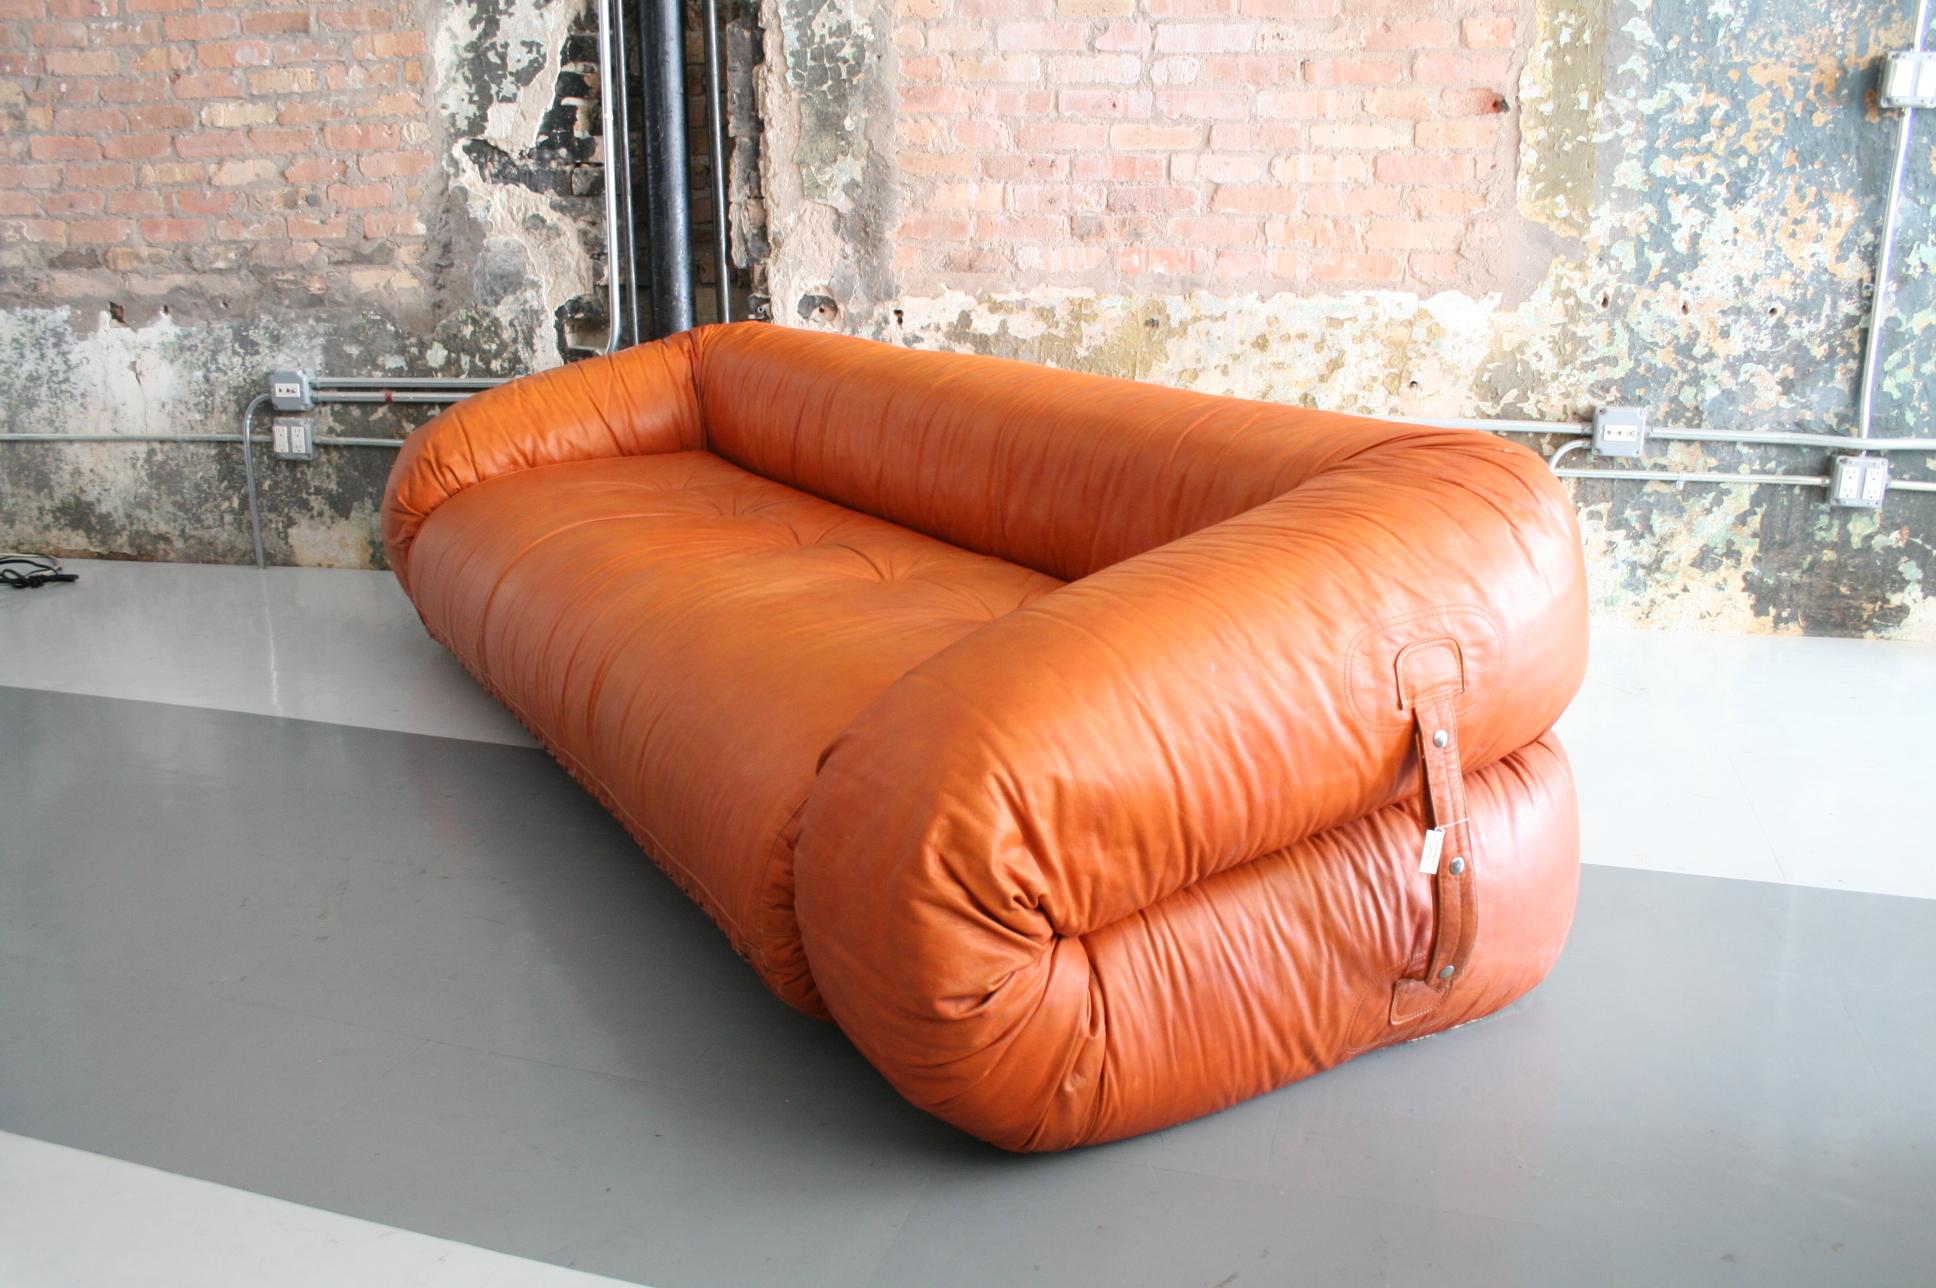 Italian Leather Anfibio Sofa / Bed by Alessandro Becchi for Giovannetti Collezioni, 1971